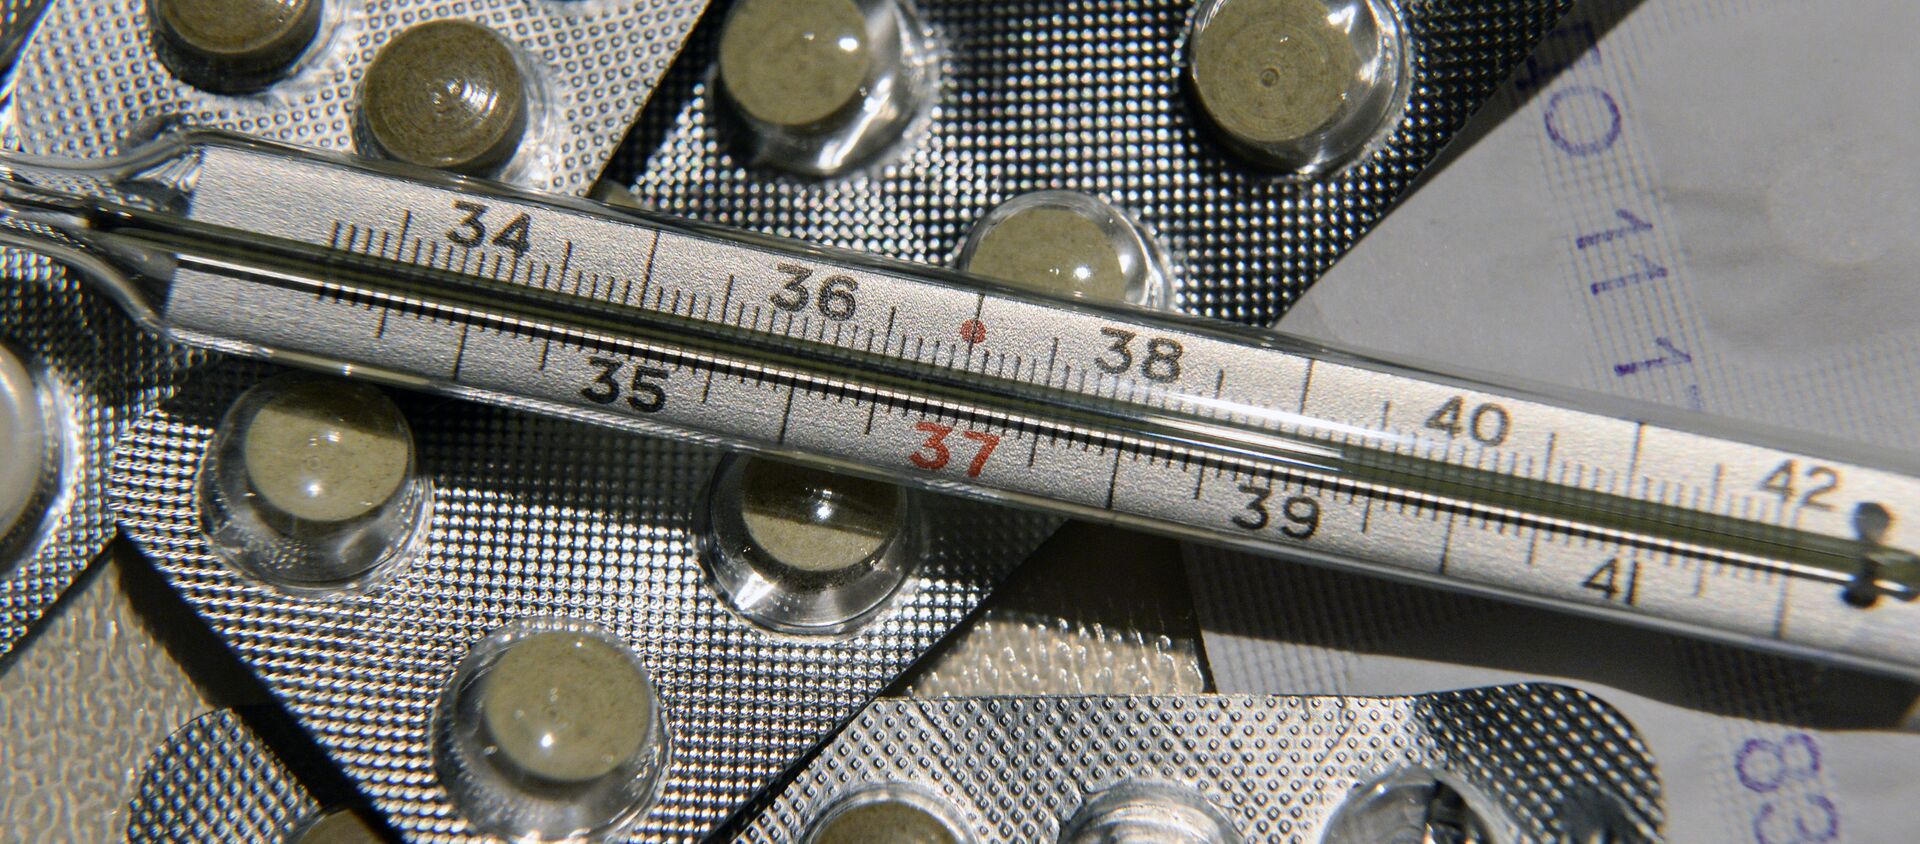 Лекарственные препараты и градусник для измерения температуры - Sputnik Аҧсны, 1920, 19.05.2021